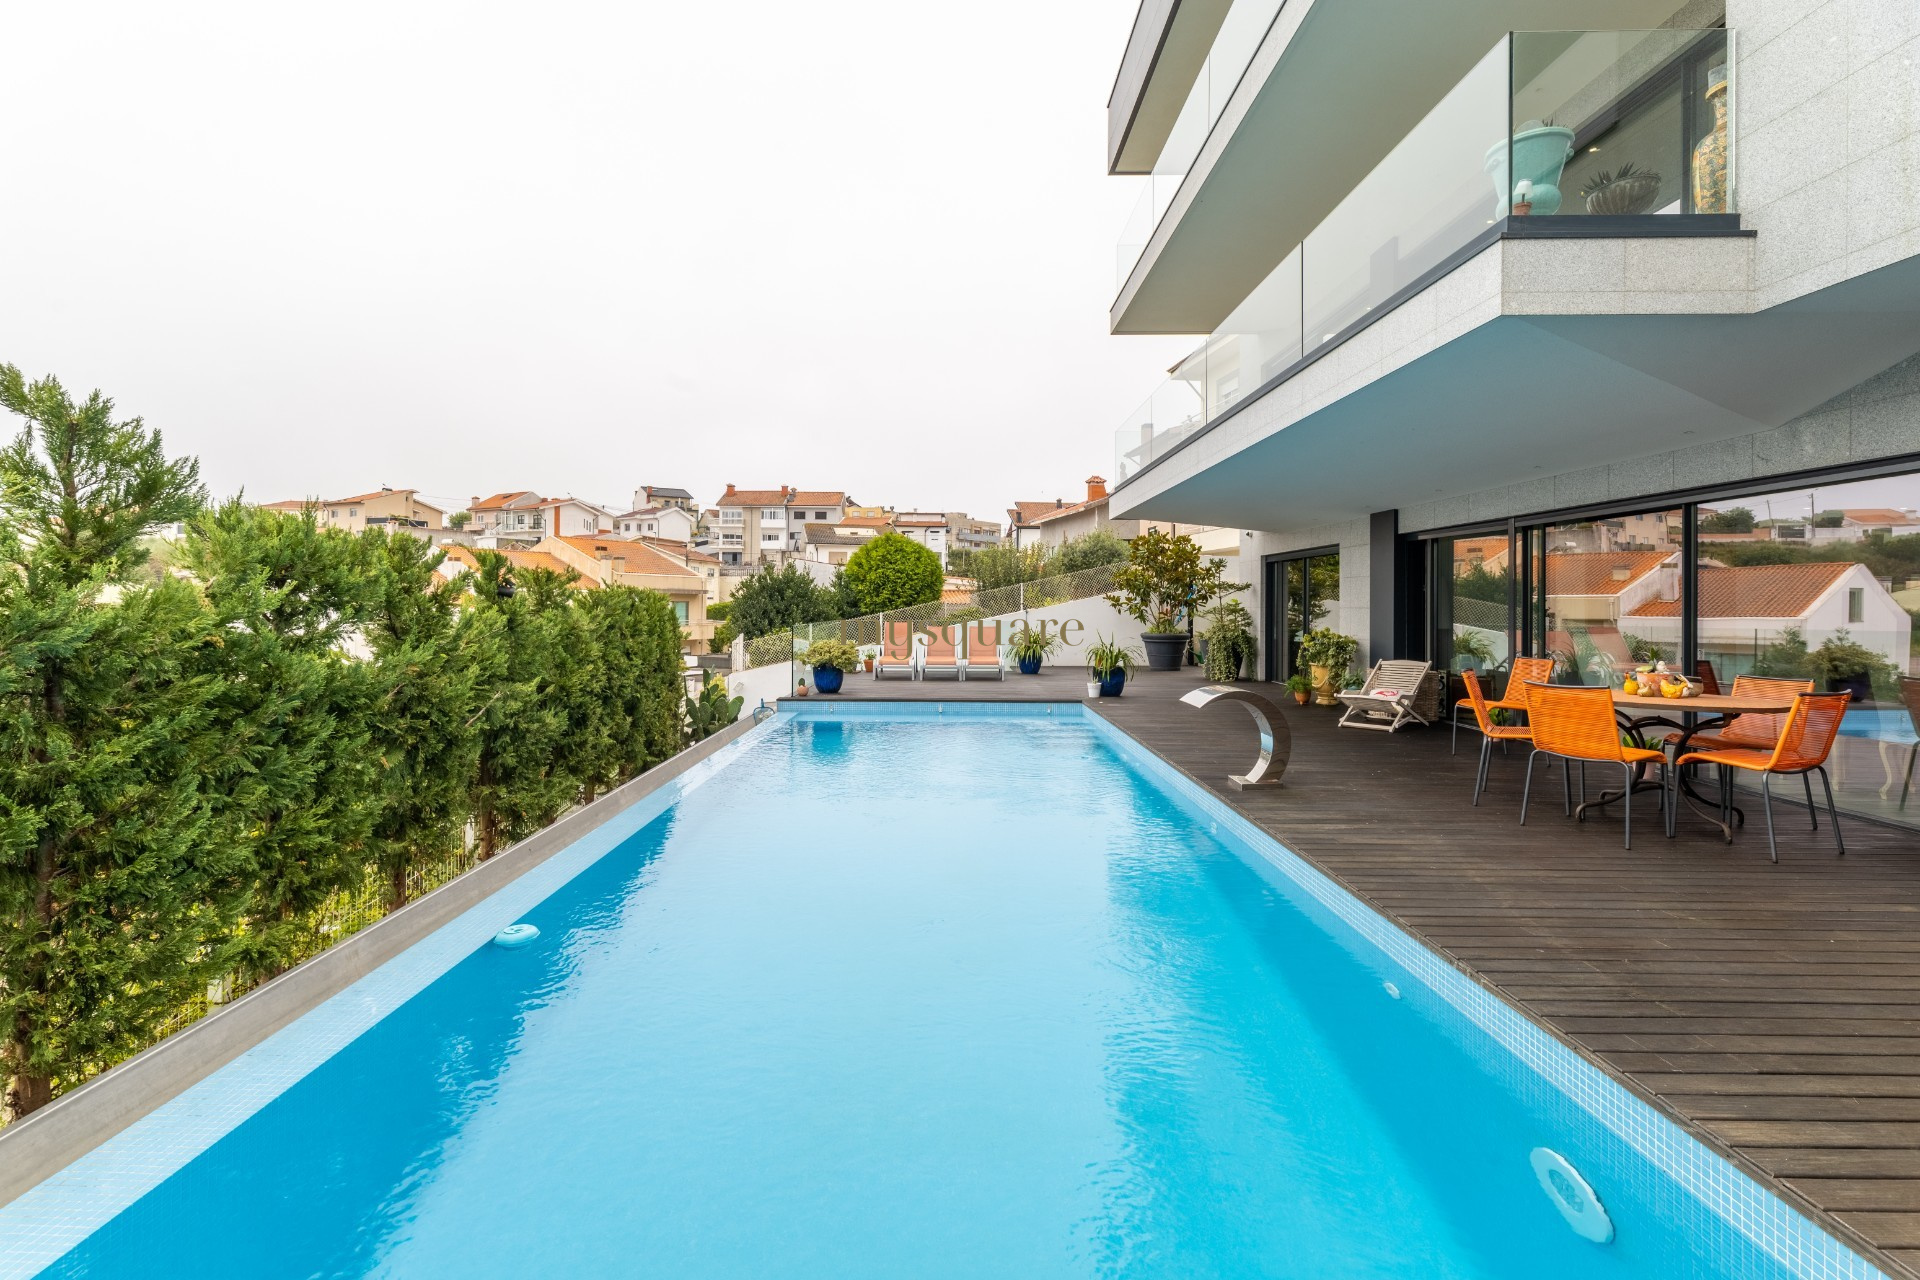 Moradia independente com 5 suites, elevador e piscina com vista rio douro, Vila Nova de Gaia